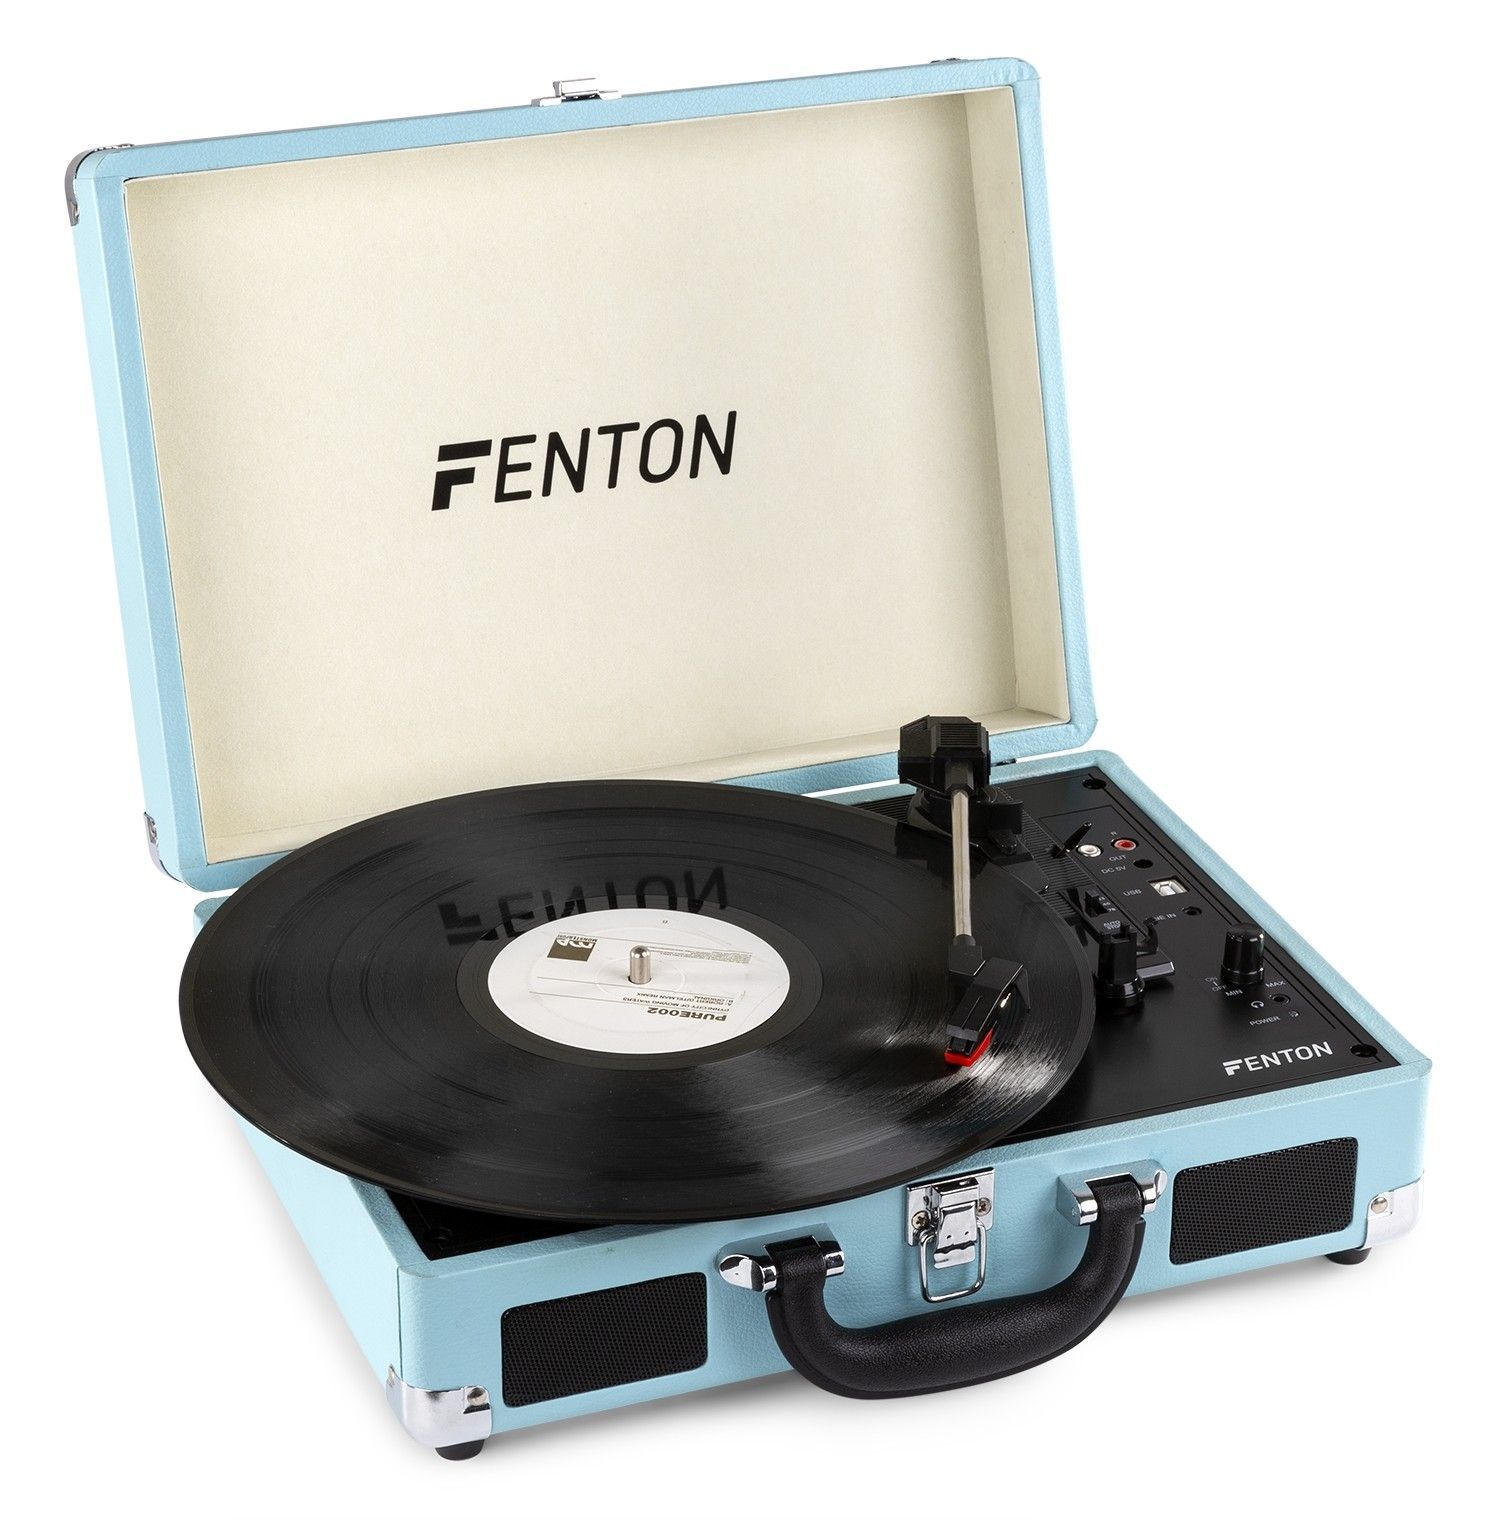 Fenton RP115 Retro skivspelare med Bluetooth och USB - Blå